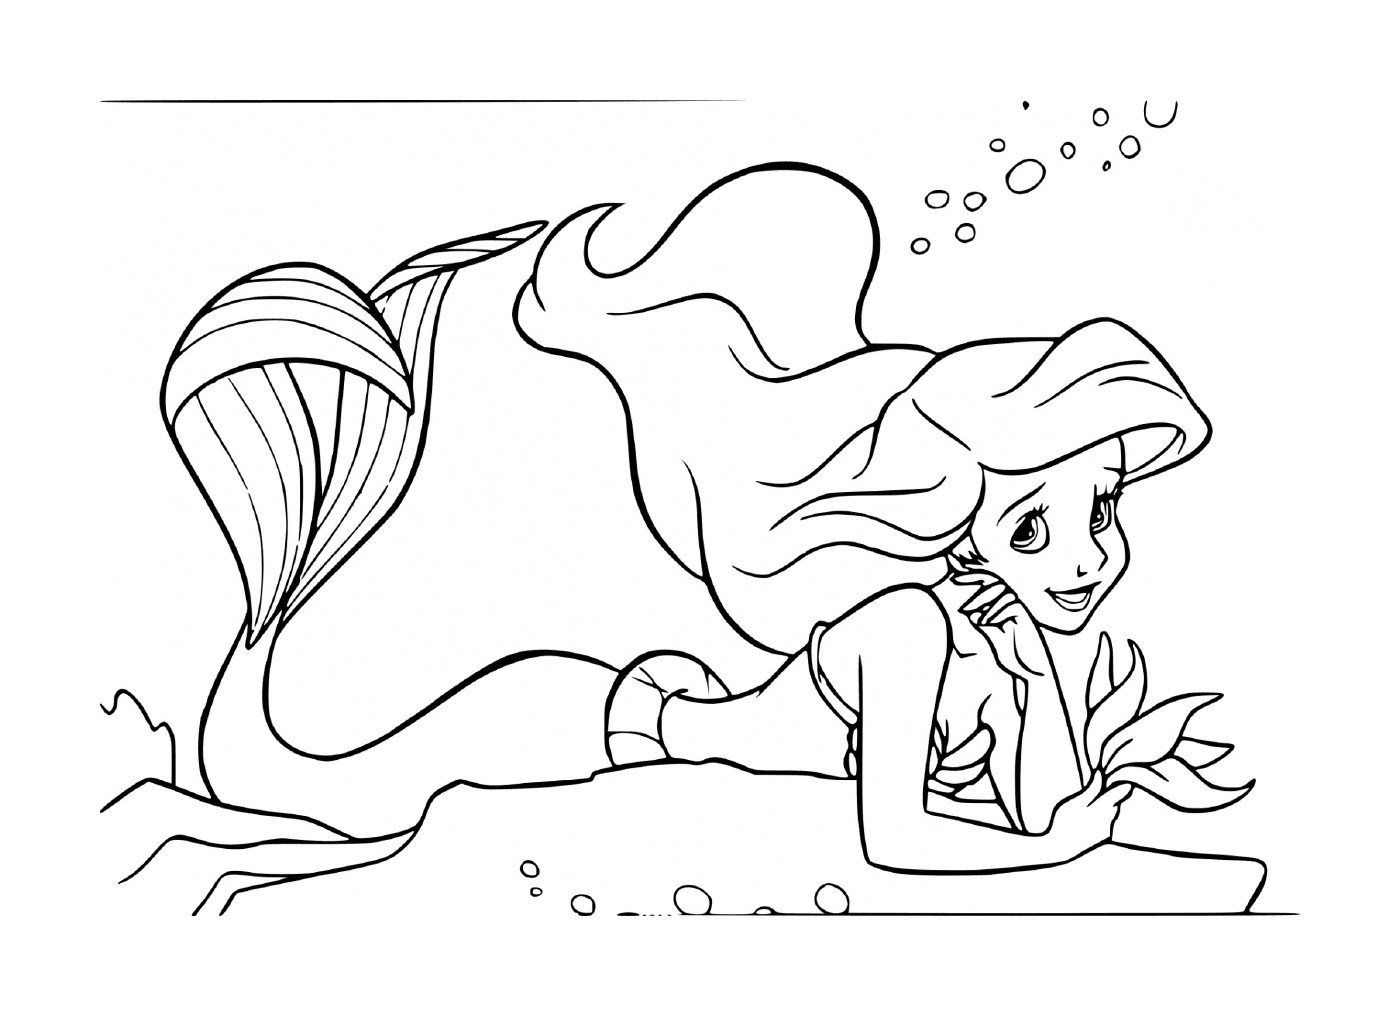  La pequeña sirena Ariel 